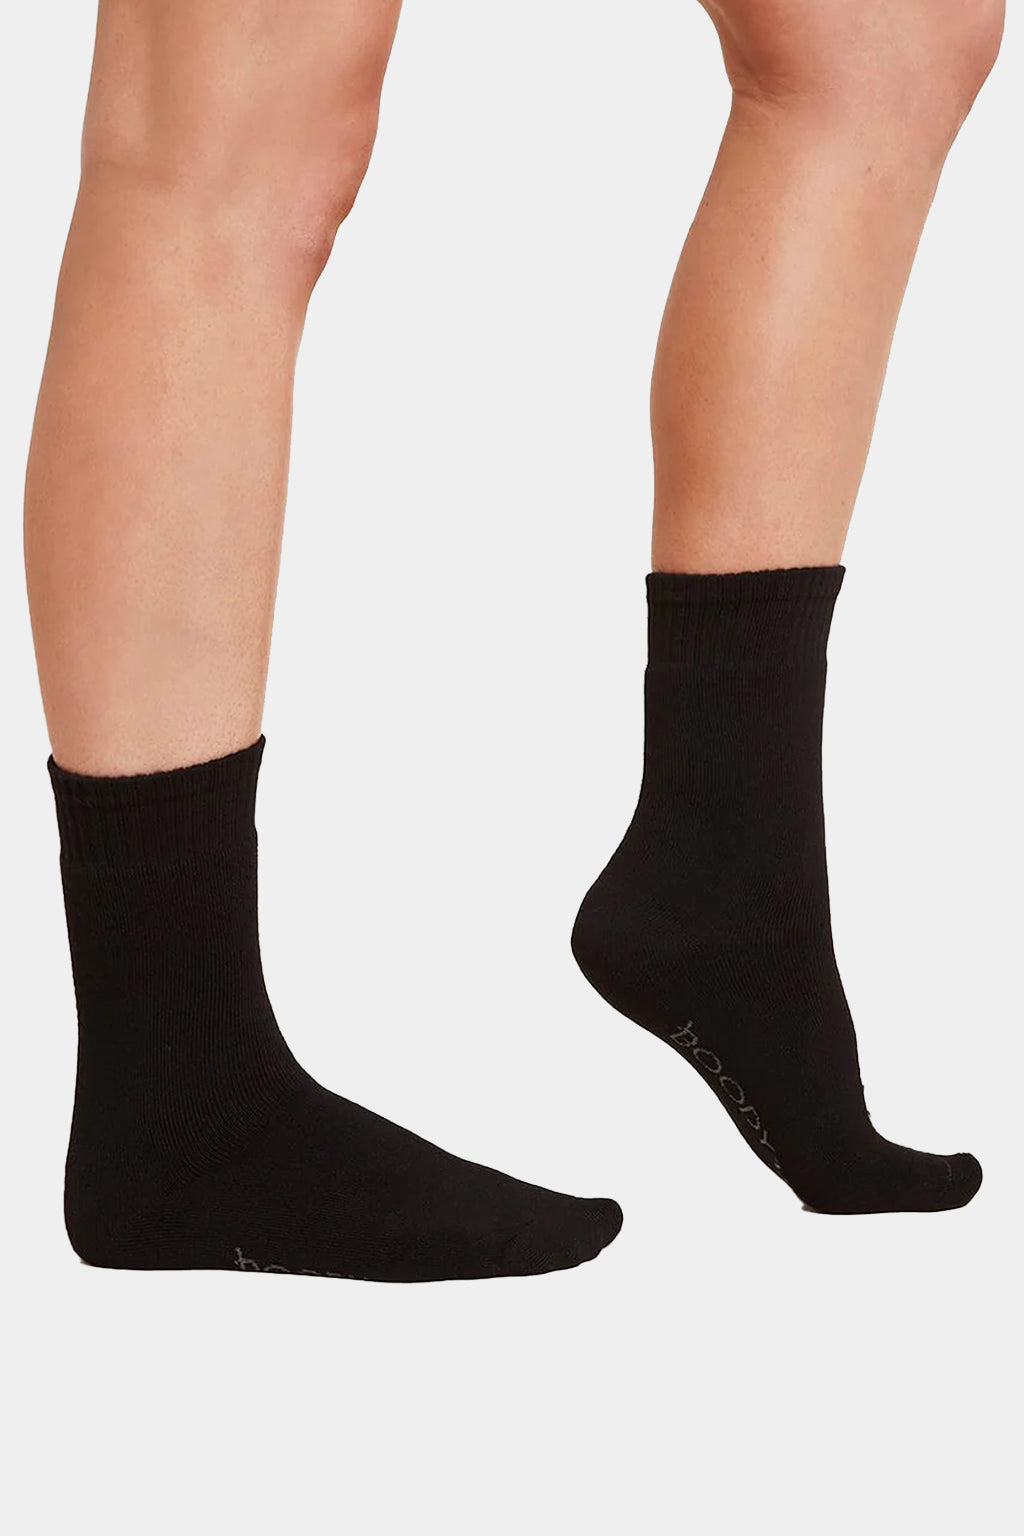 Boody - Women' Crew Boot Socks (Pairs of Three)